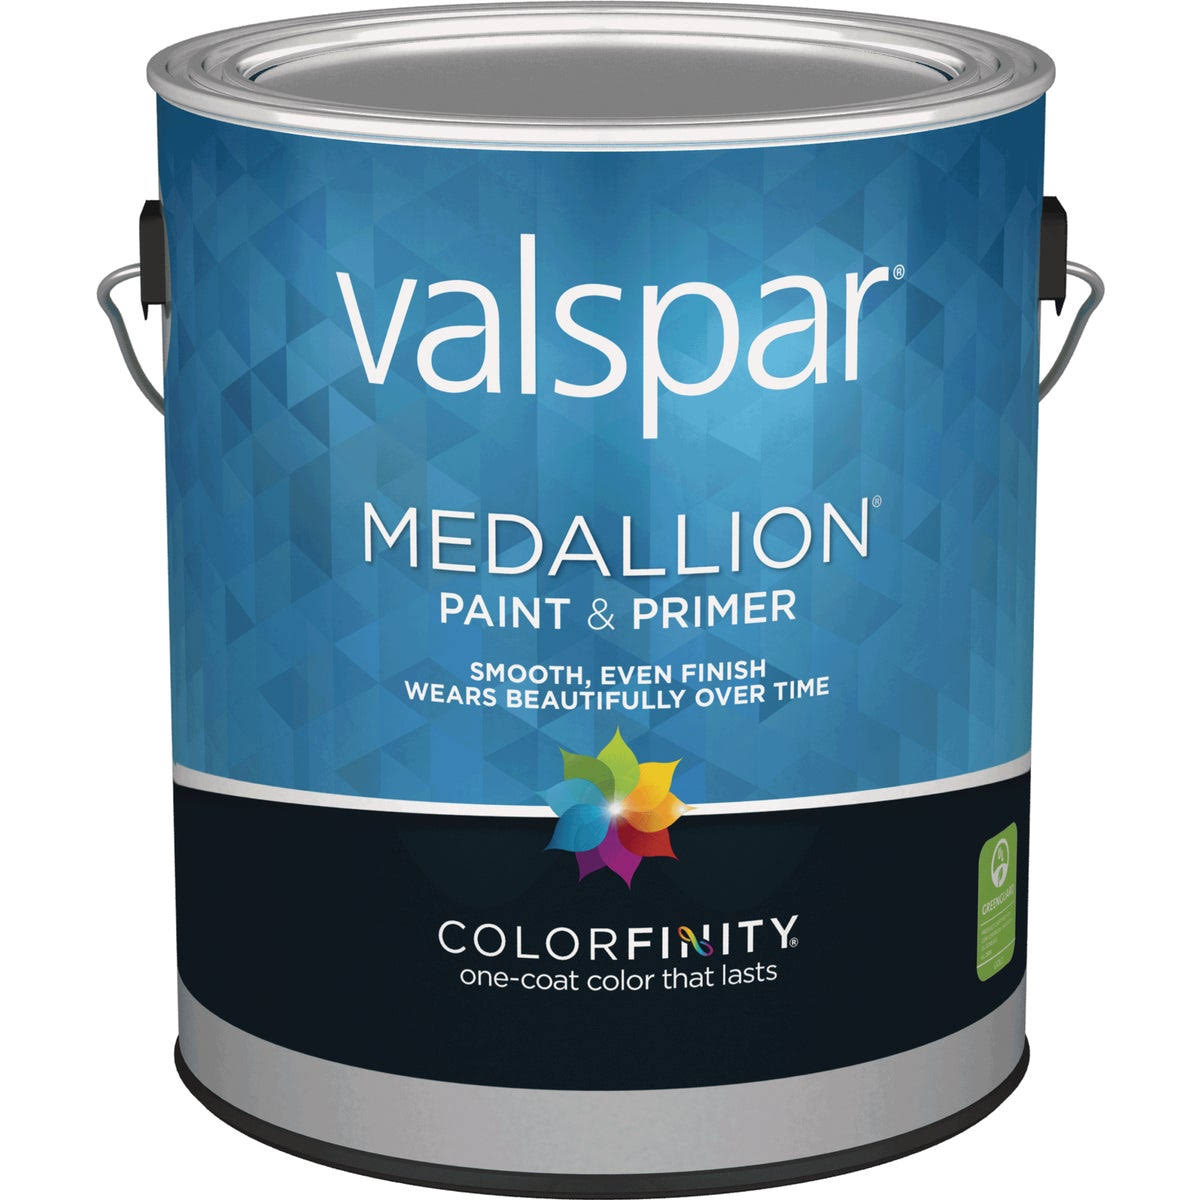 Valspar Medallion Eggshell Interior Latex Paint - White, 1 Gallon